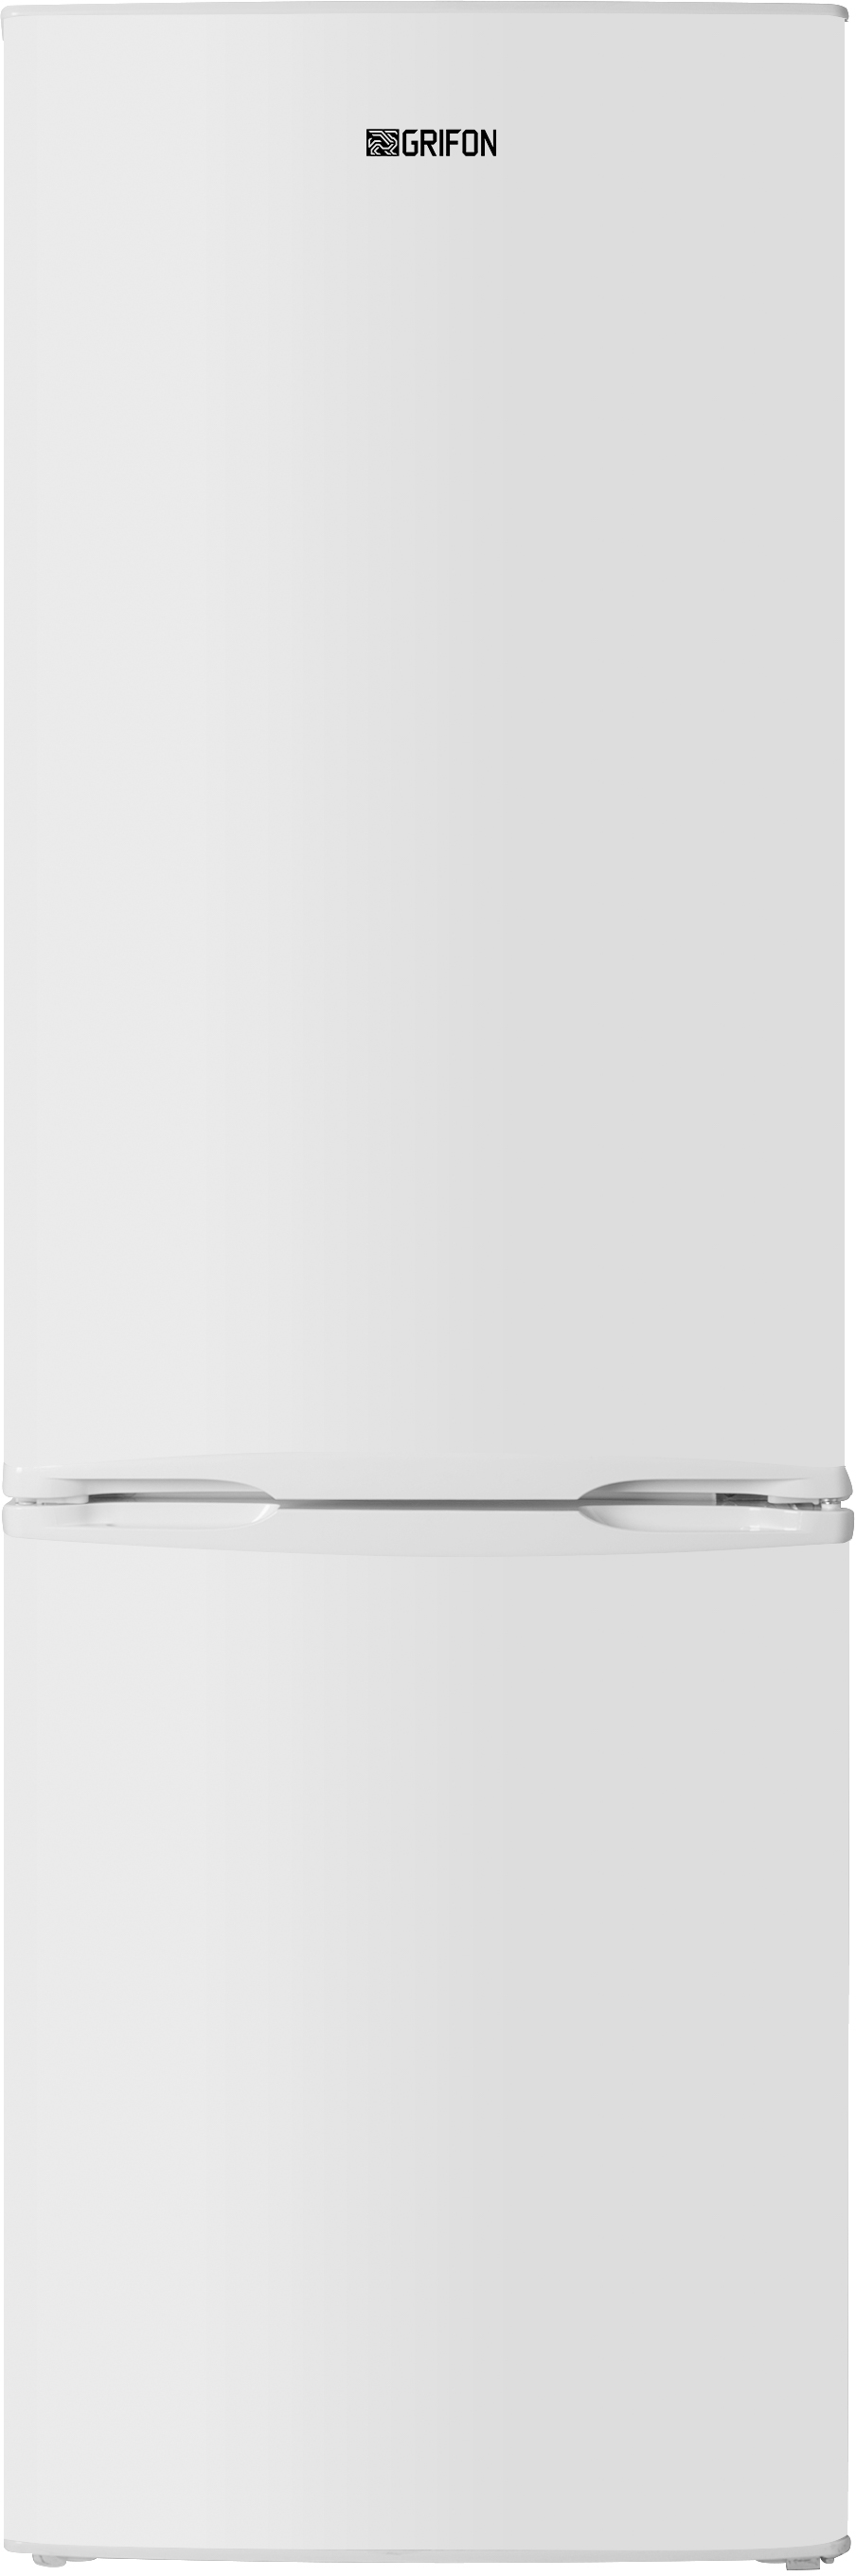 Холодильник Grifon DFN-185W в интернет-магазине, главное фото